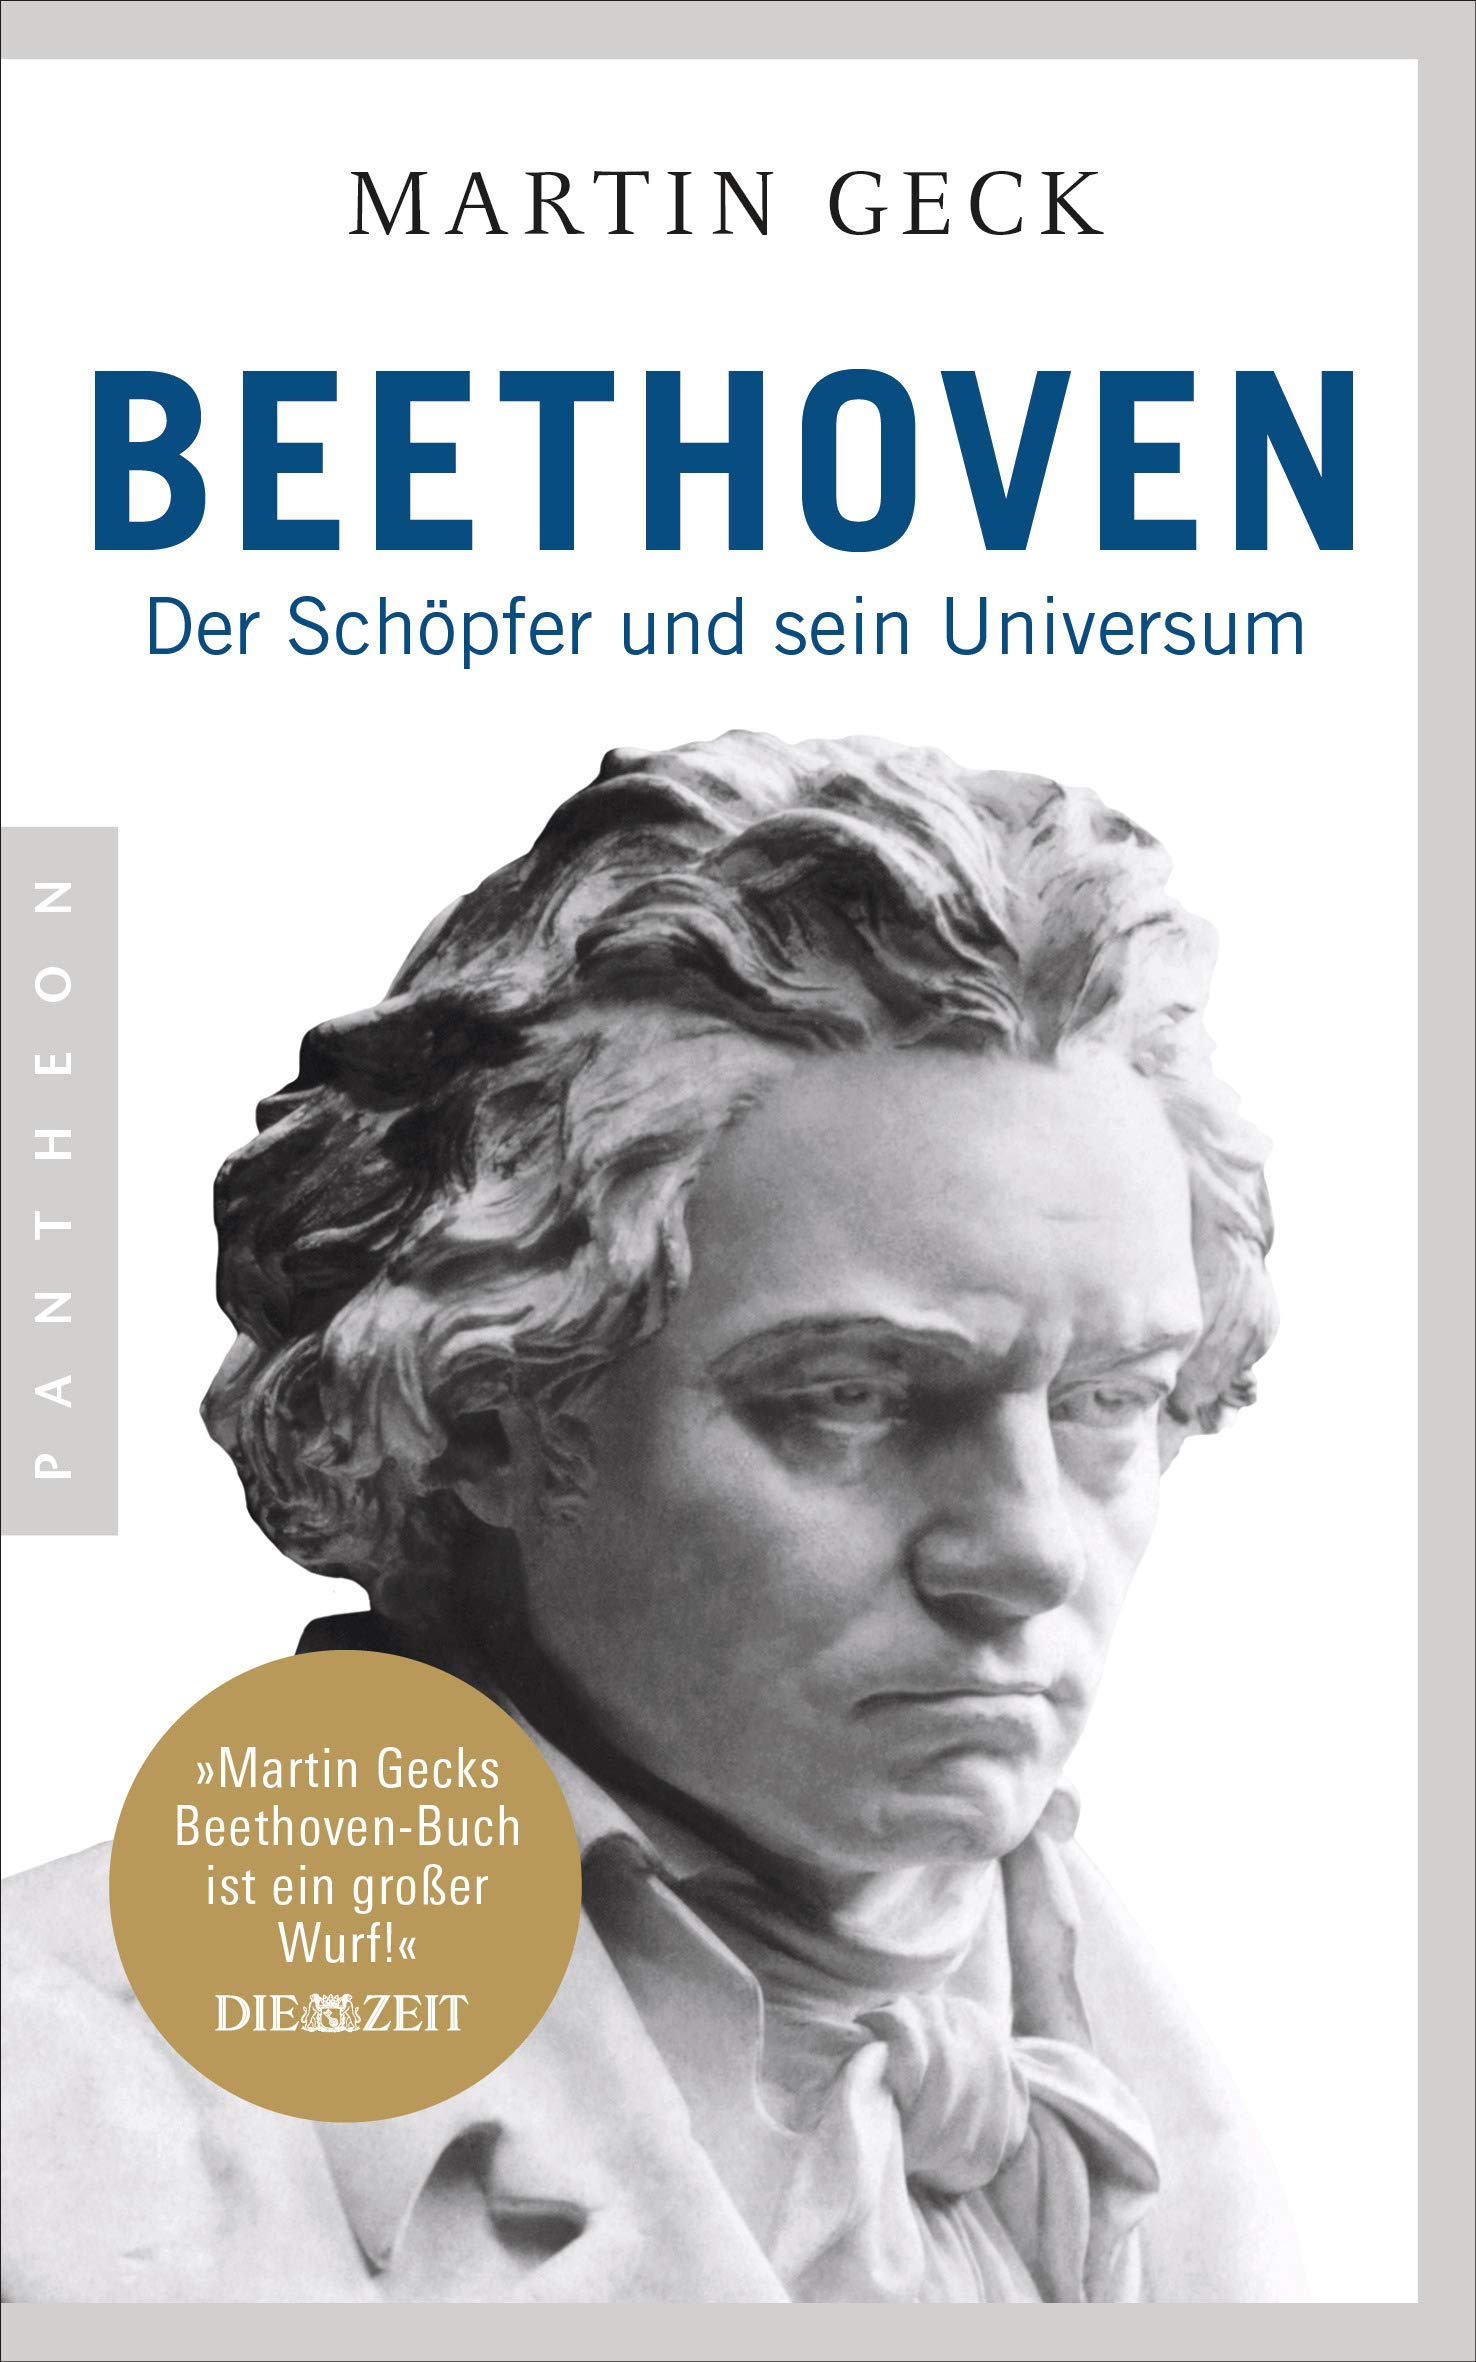 250 anni dalla nascita di Beethoven